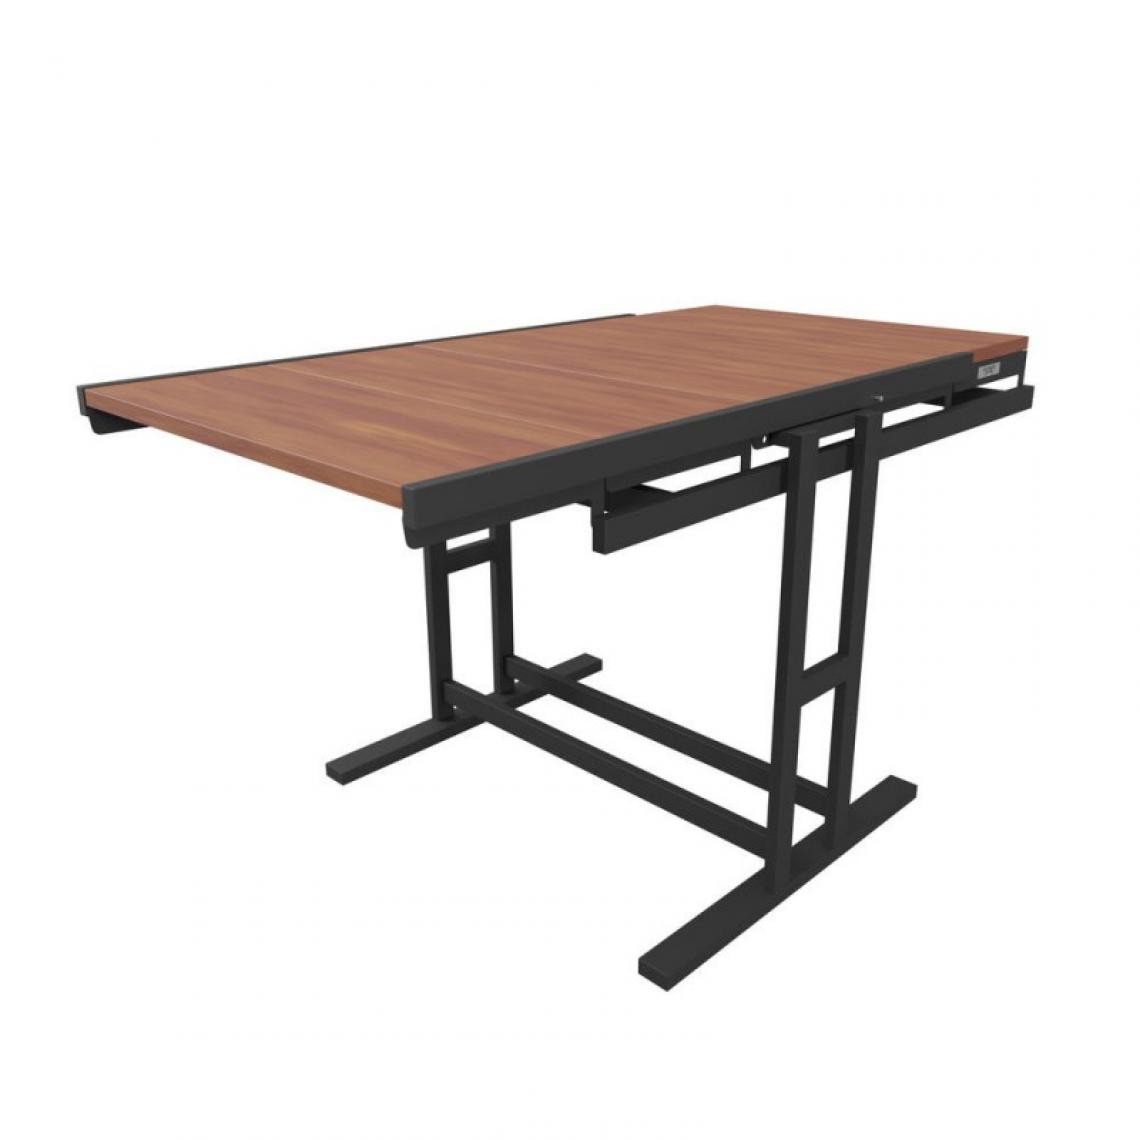 Blumie - Table modulable (L140 x l80 x H77 cm) convertible en Etagère - style industriel - Tables à manger